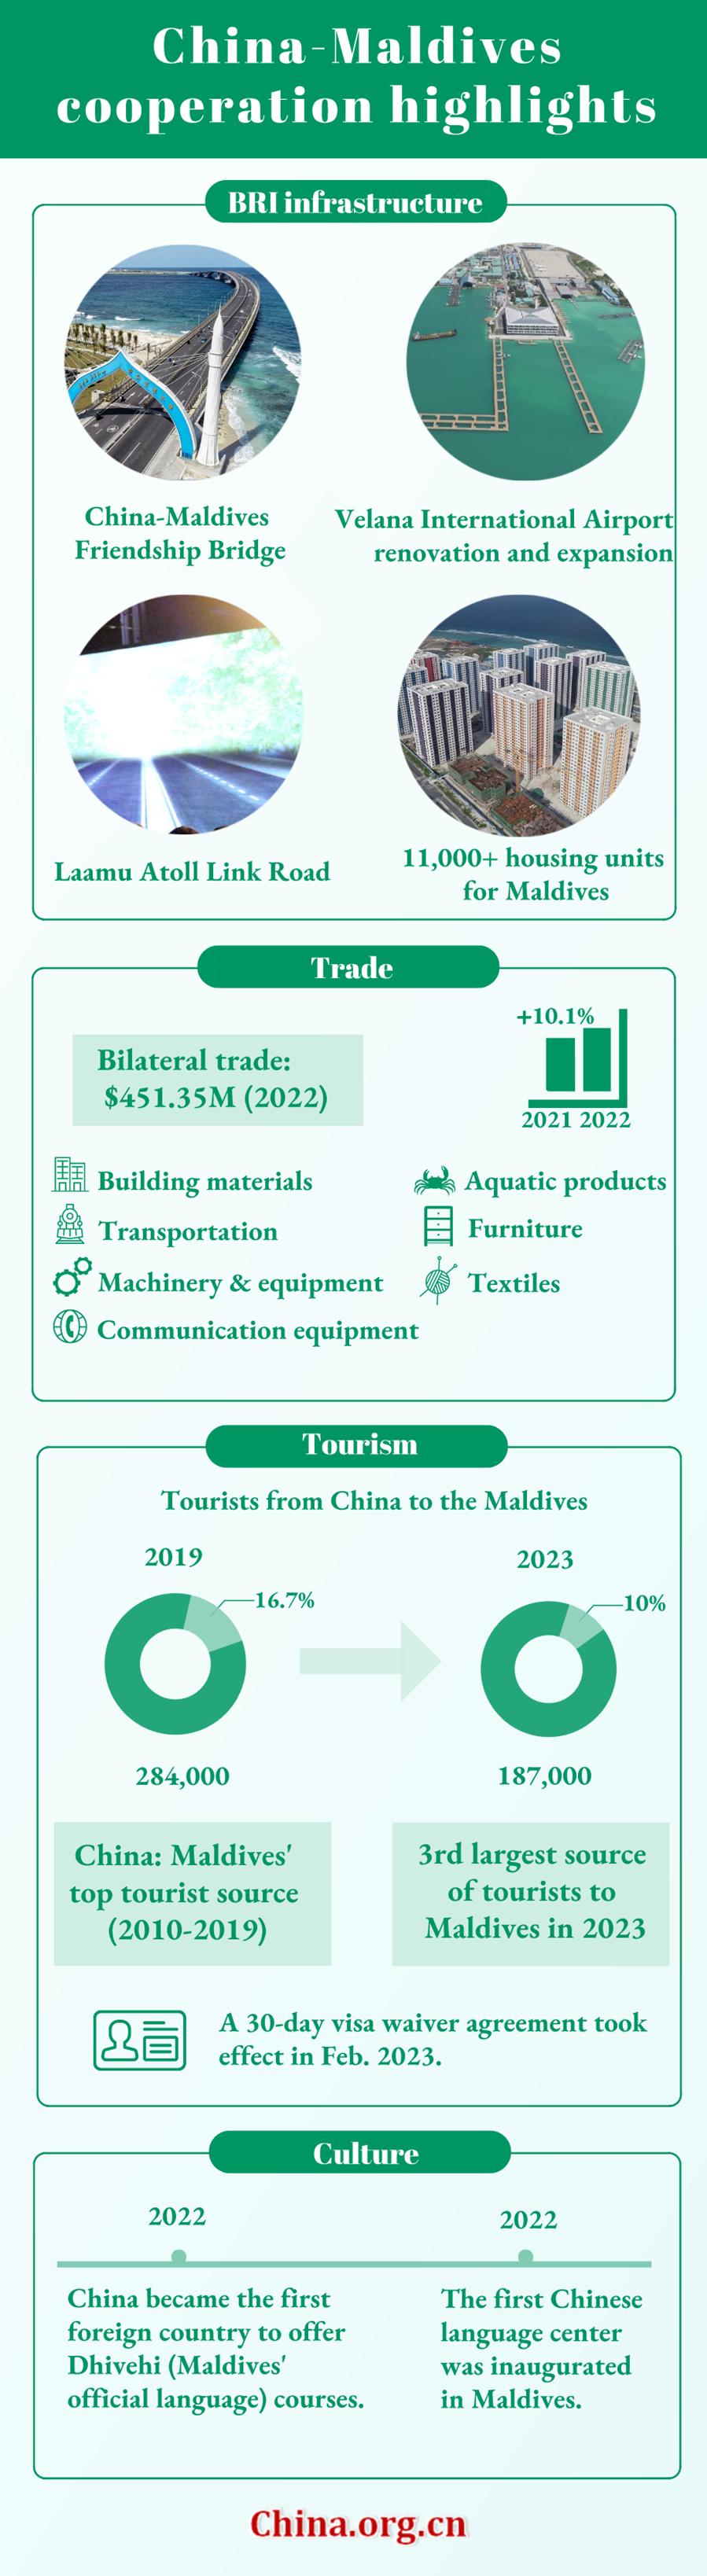 Highlights of China-Maldives cooperation